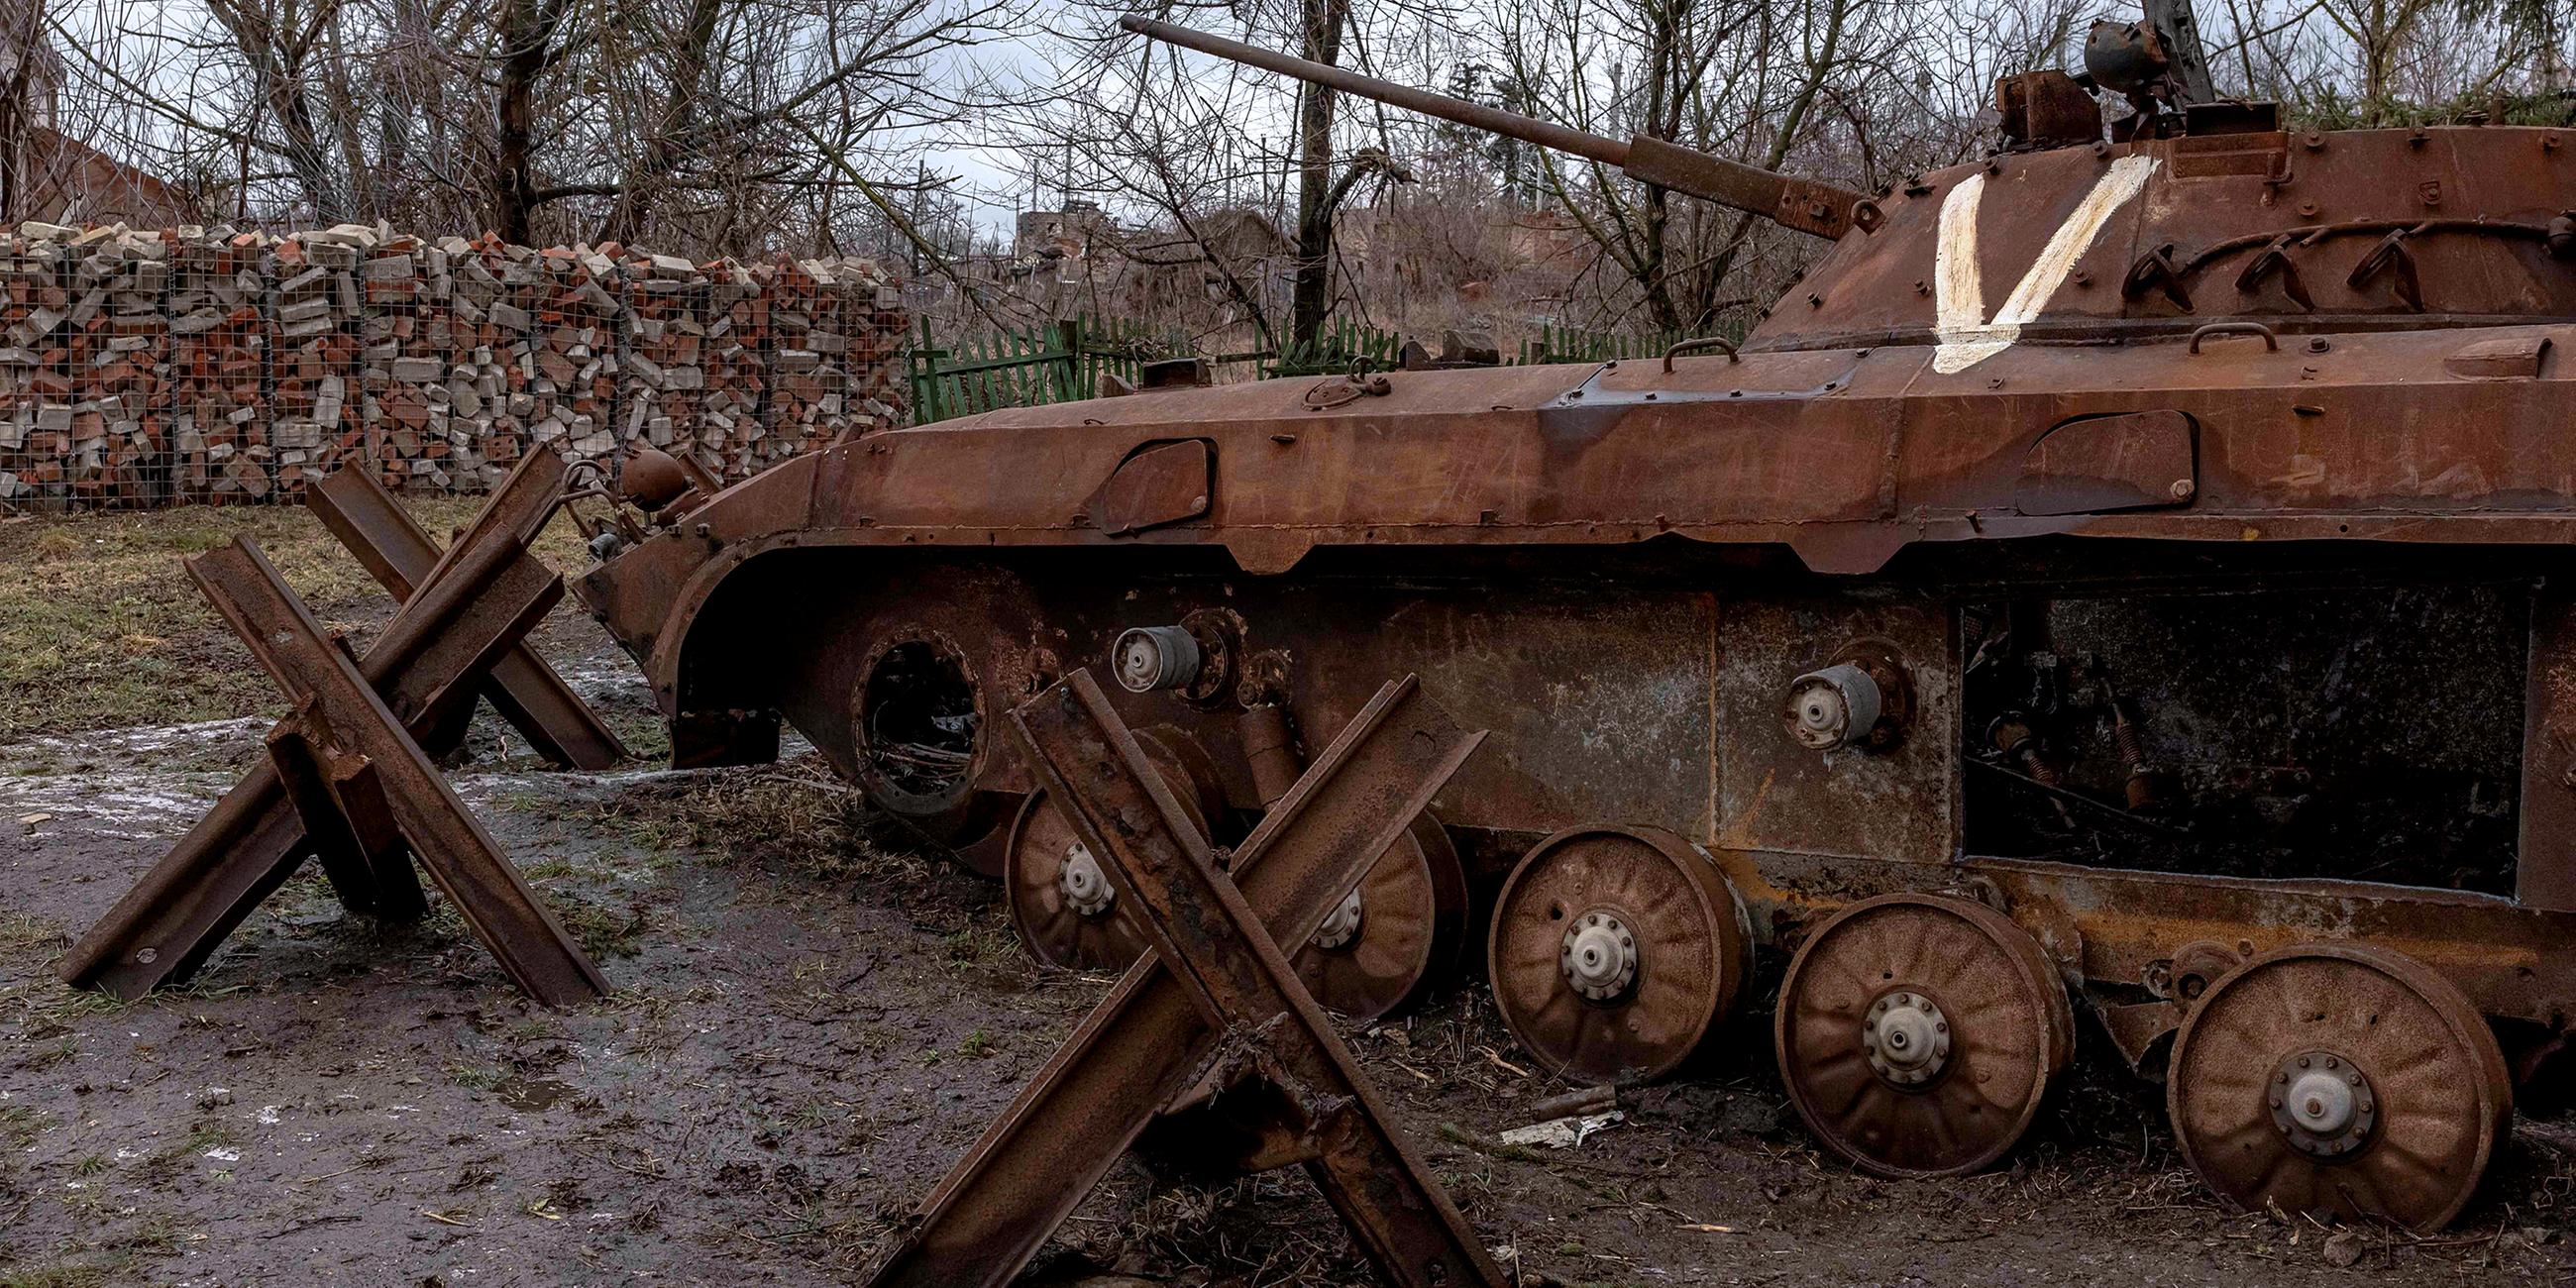 Zerstörter Panzer mit dem russischen Kriegssymbol "V" im Dorf Bohorodychne in der Region Donezk